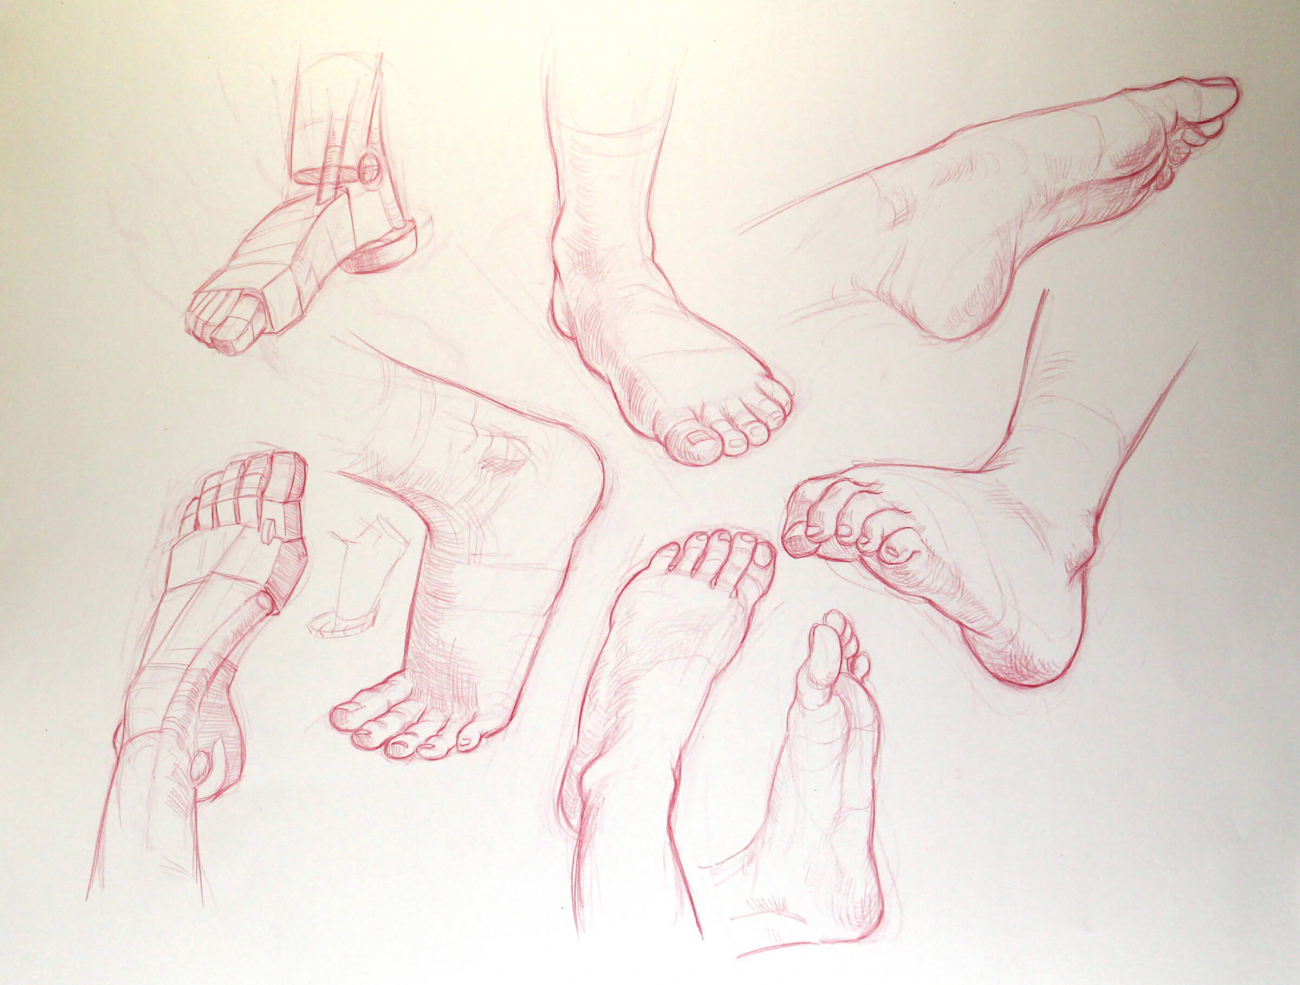 various drawings of feet